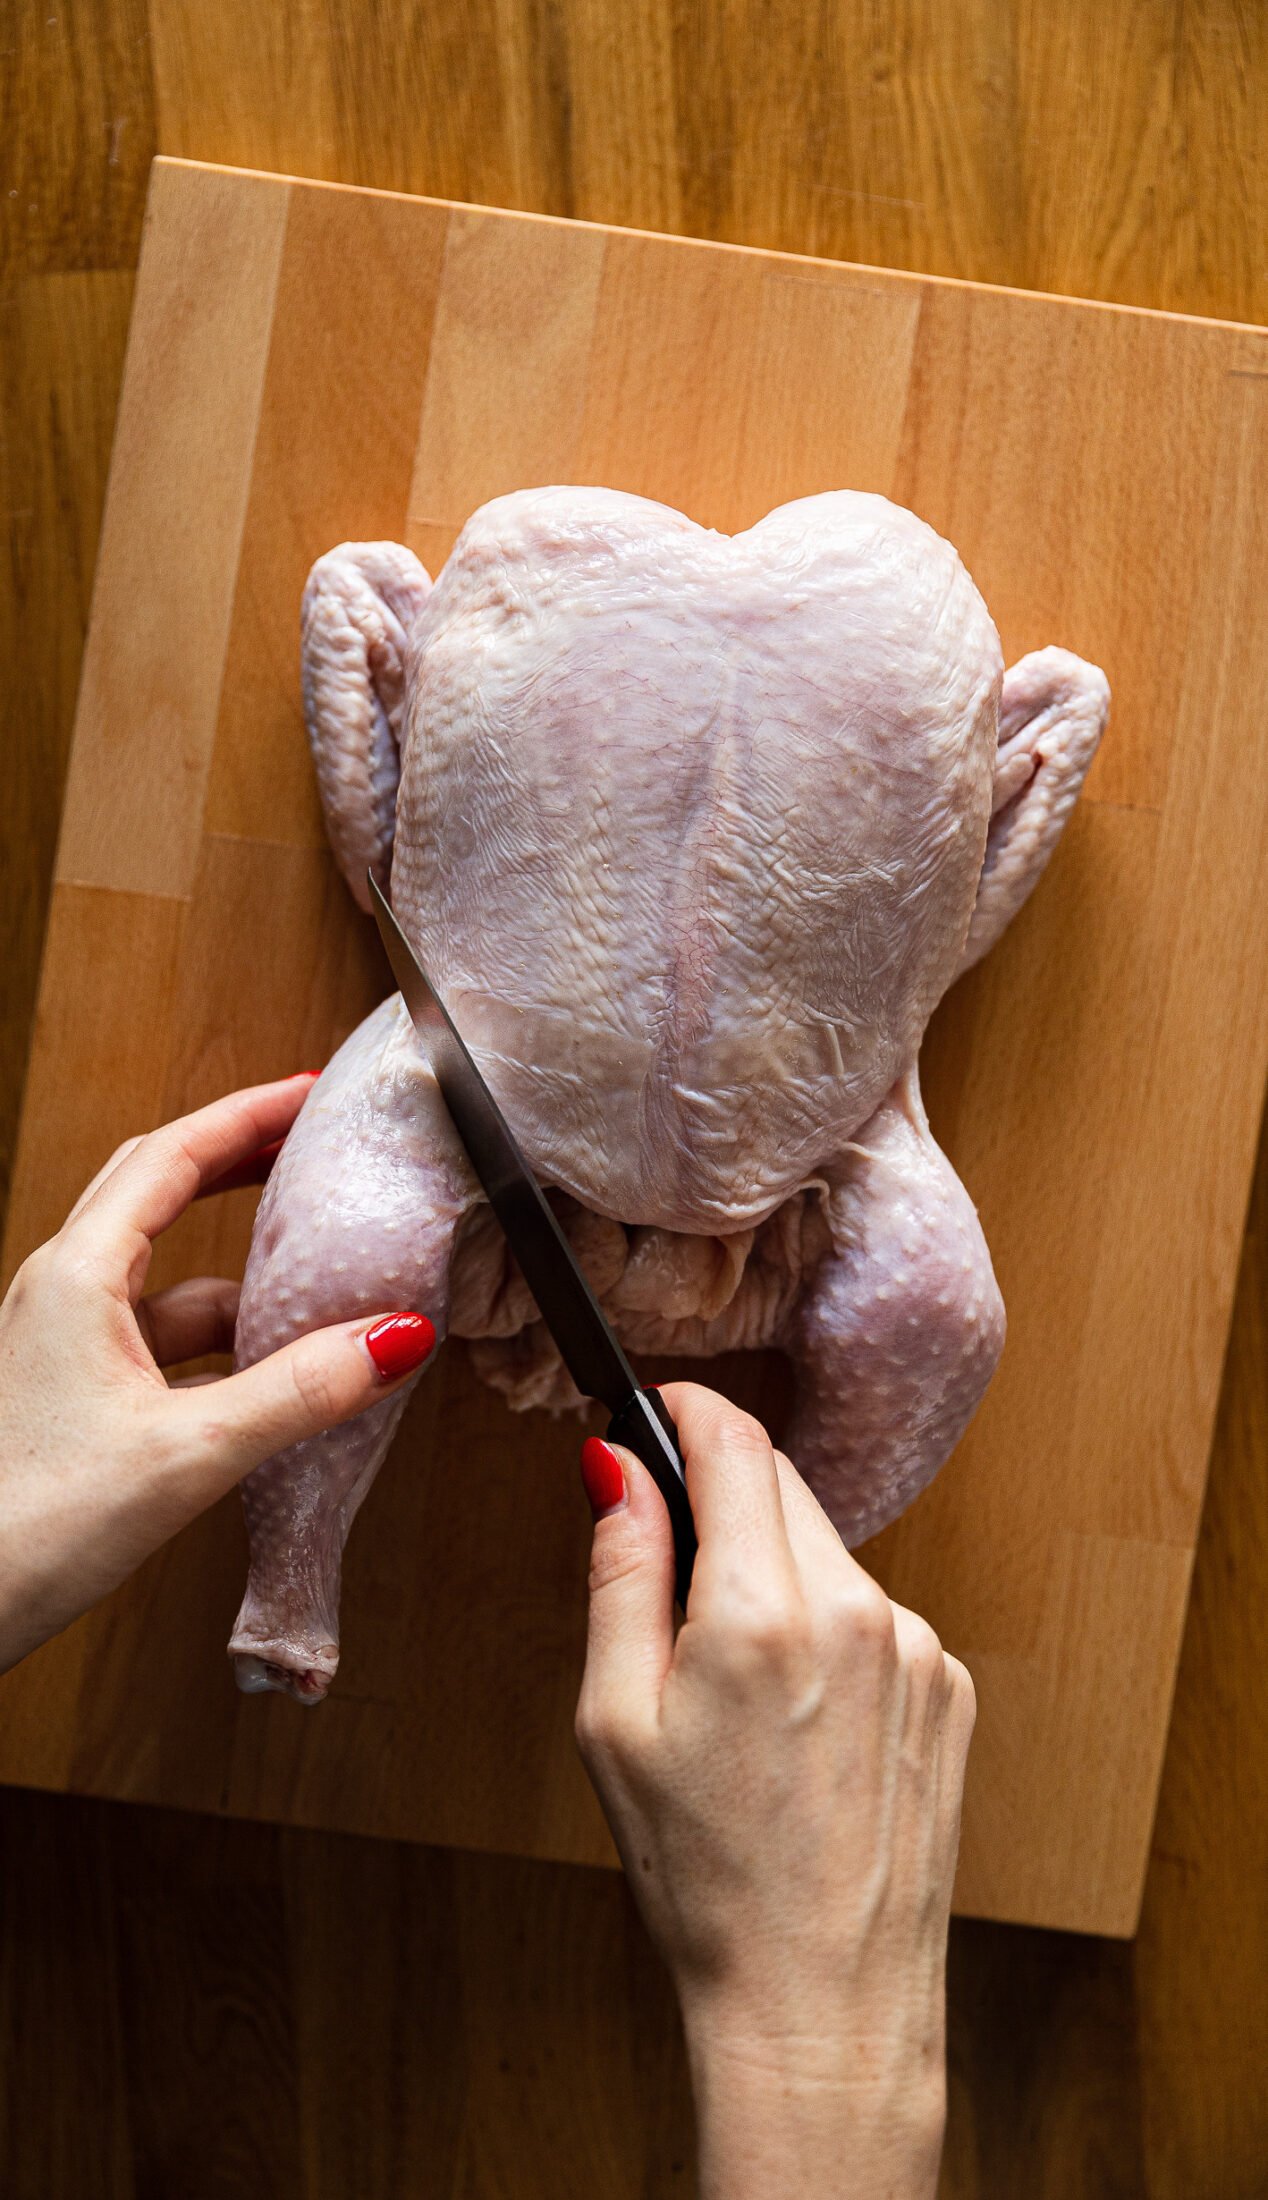 Proč kupovat celé kuře & jak ho zpracovat beze zbytku